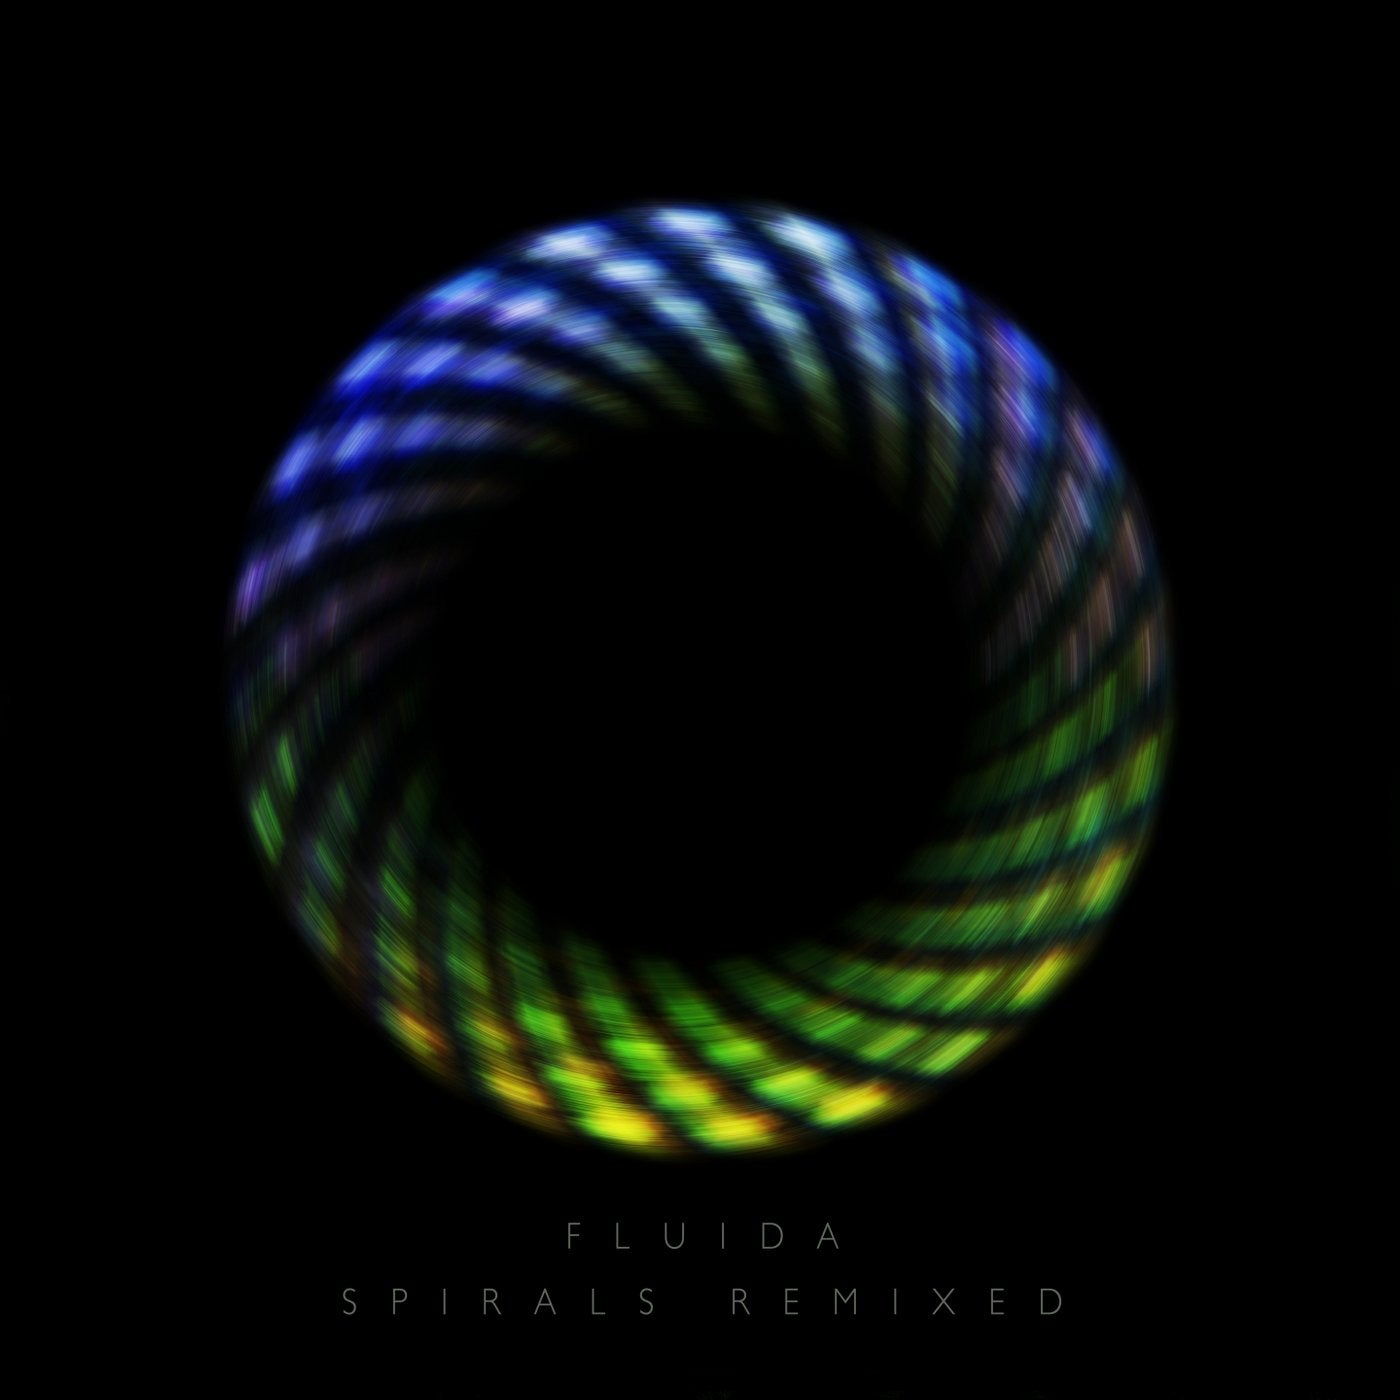 Spirals Remixed